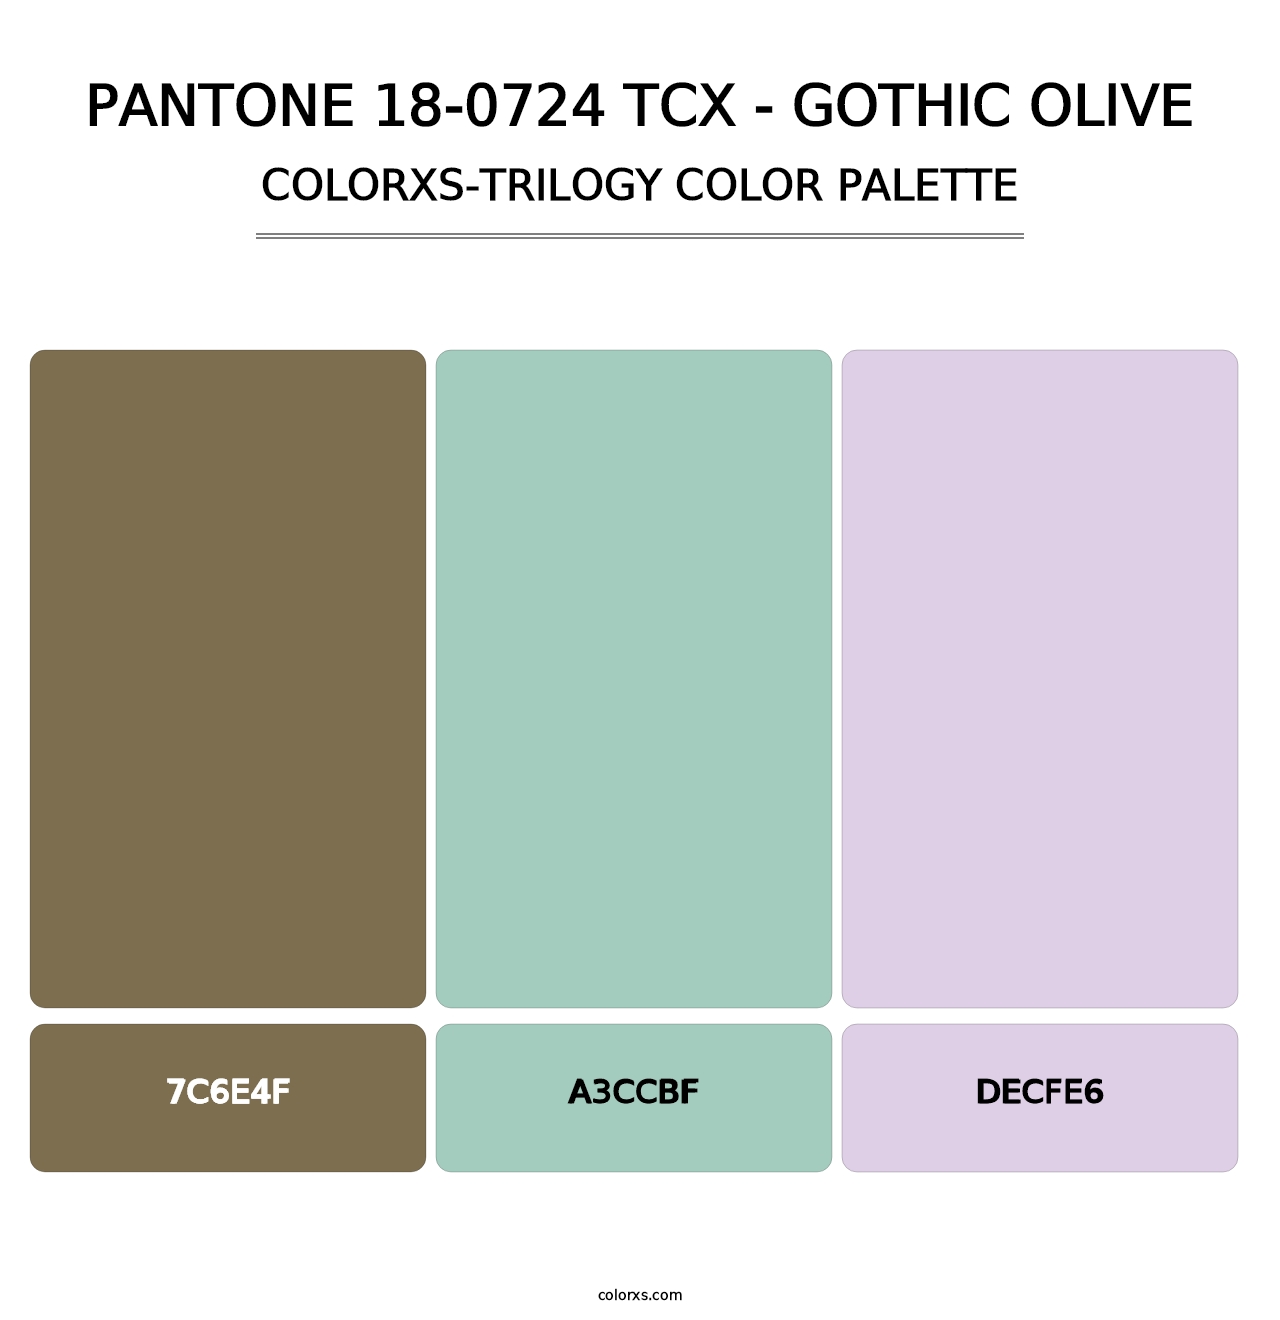 PANTONE 18-0724 TCX - Gothic Olive - Colorxs Trilogy Palette